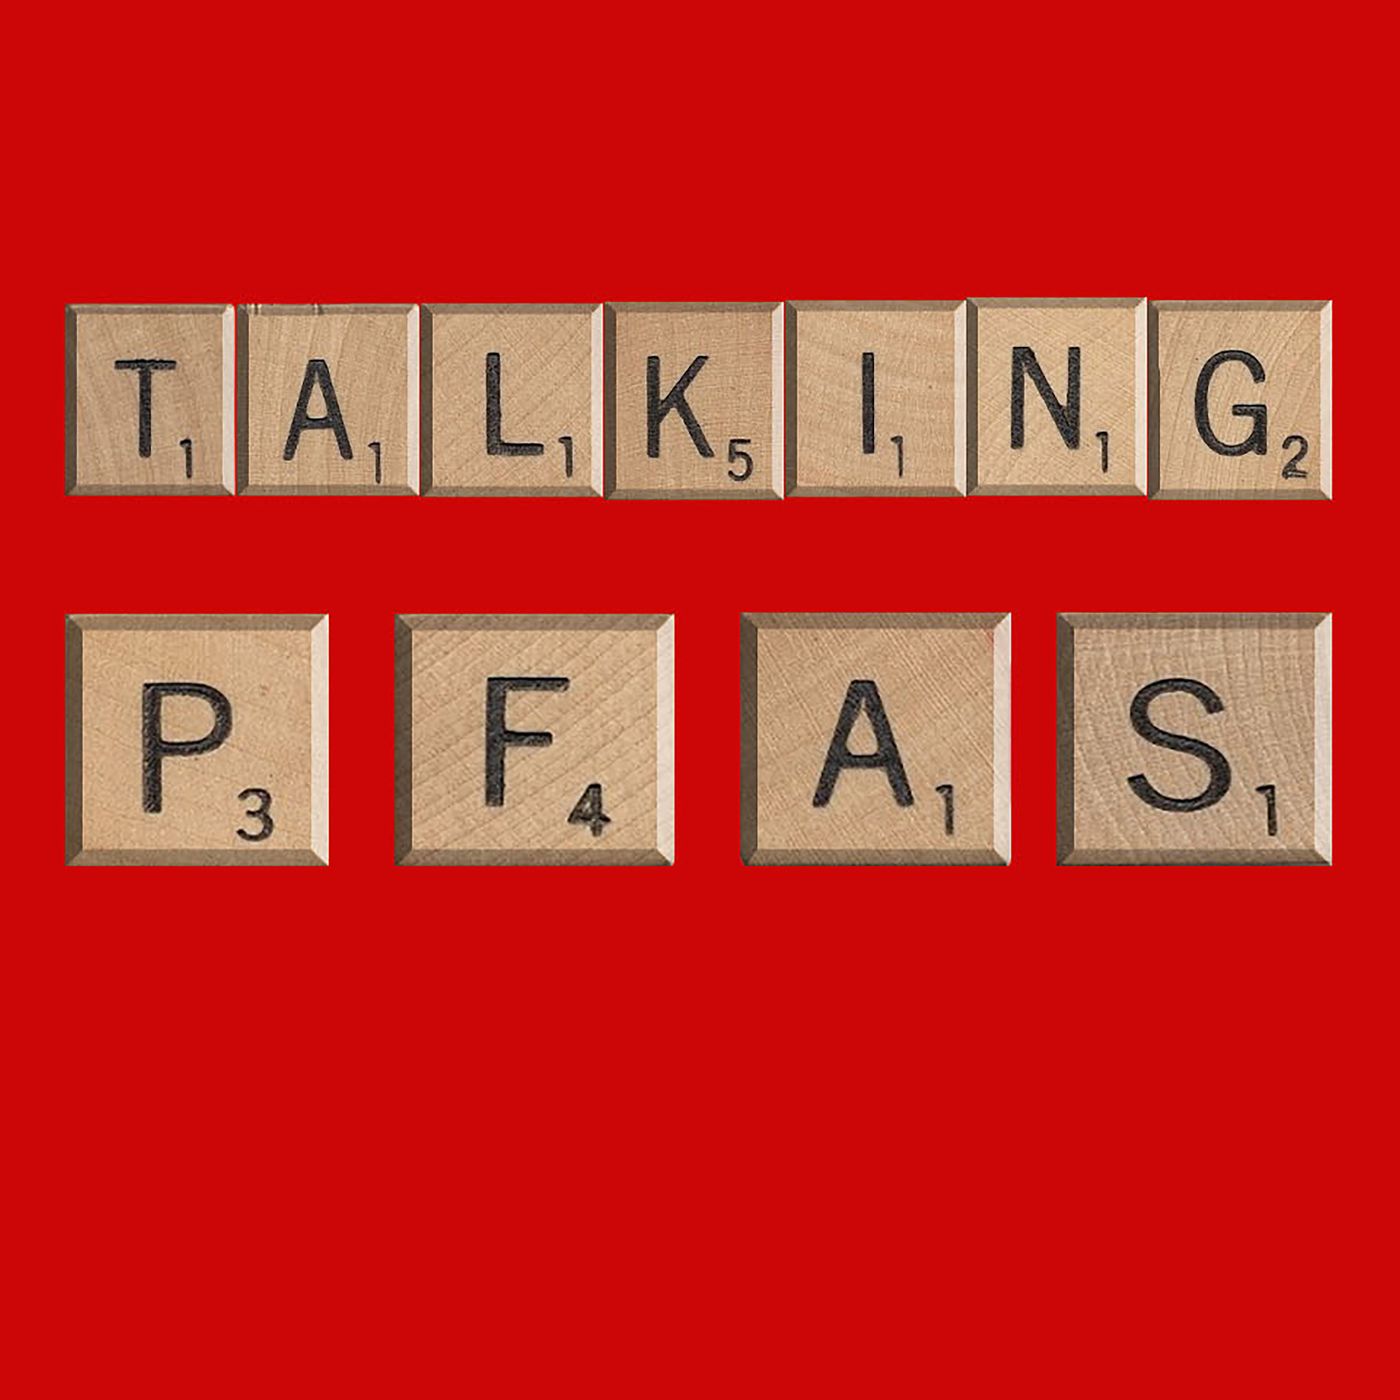 TalkingPFAS - TalkingPFAS 